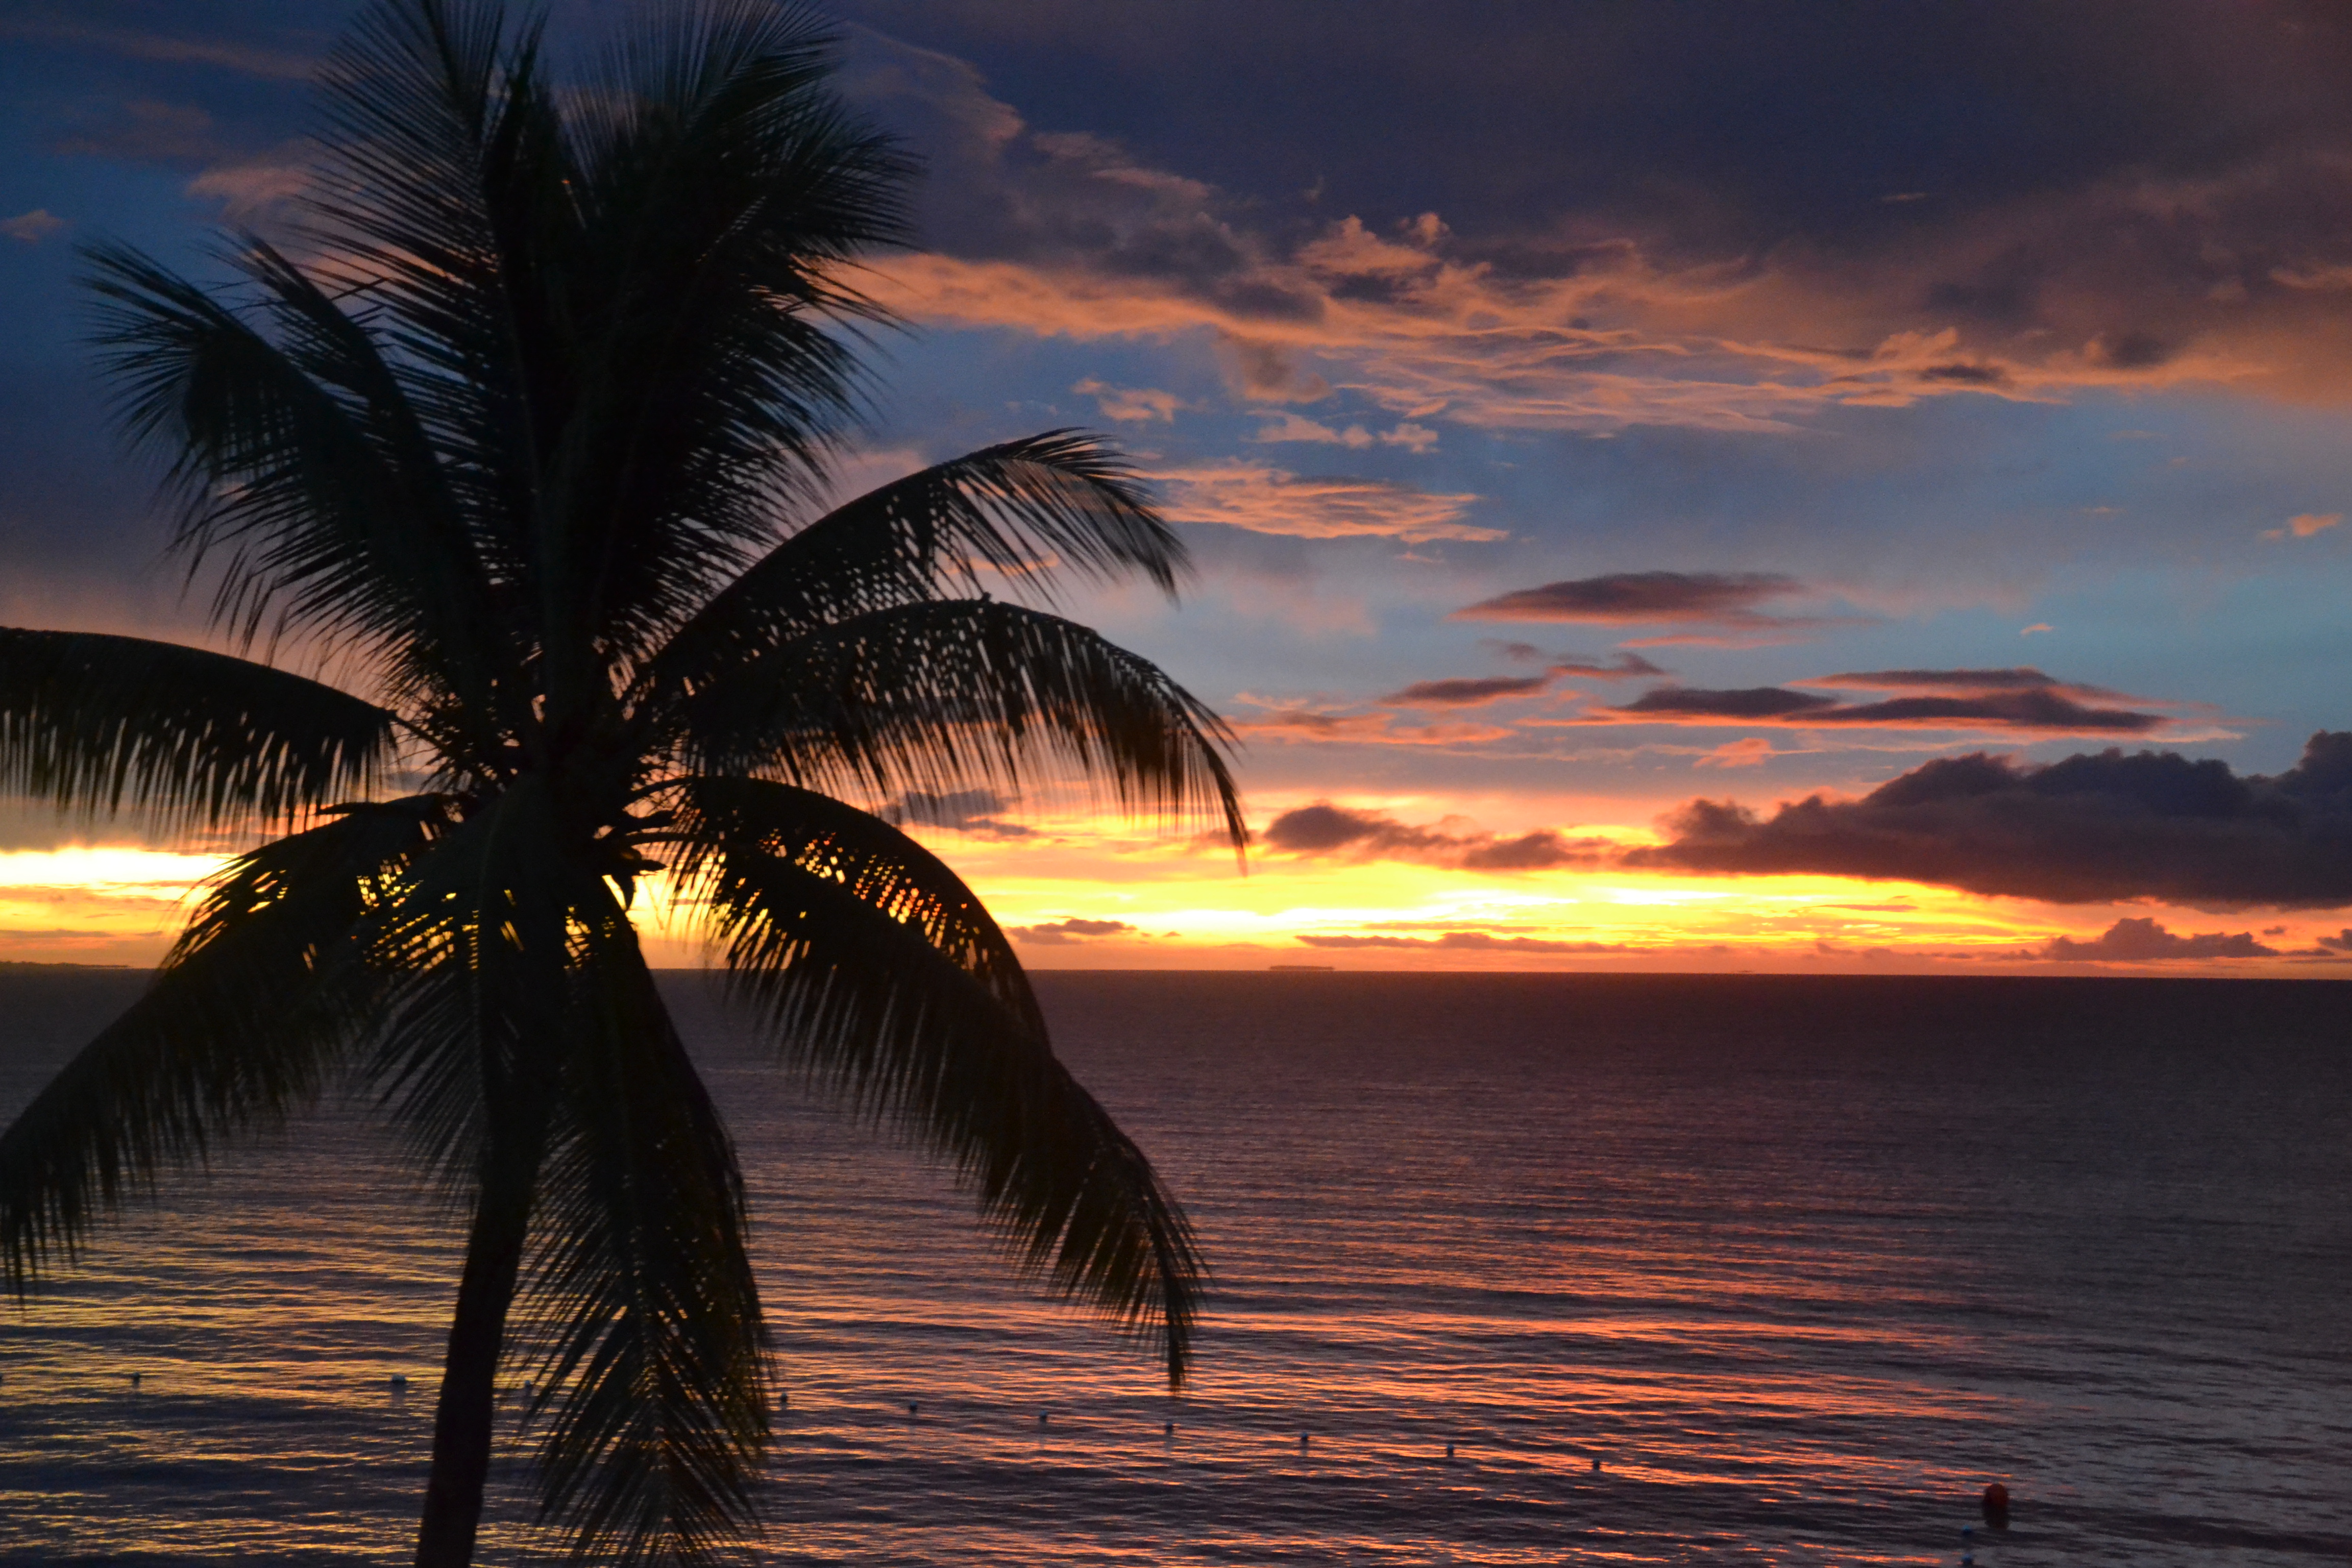 File:Sunset Palm Tree (6753868547).jpg - Wikimedia Commons